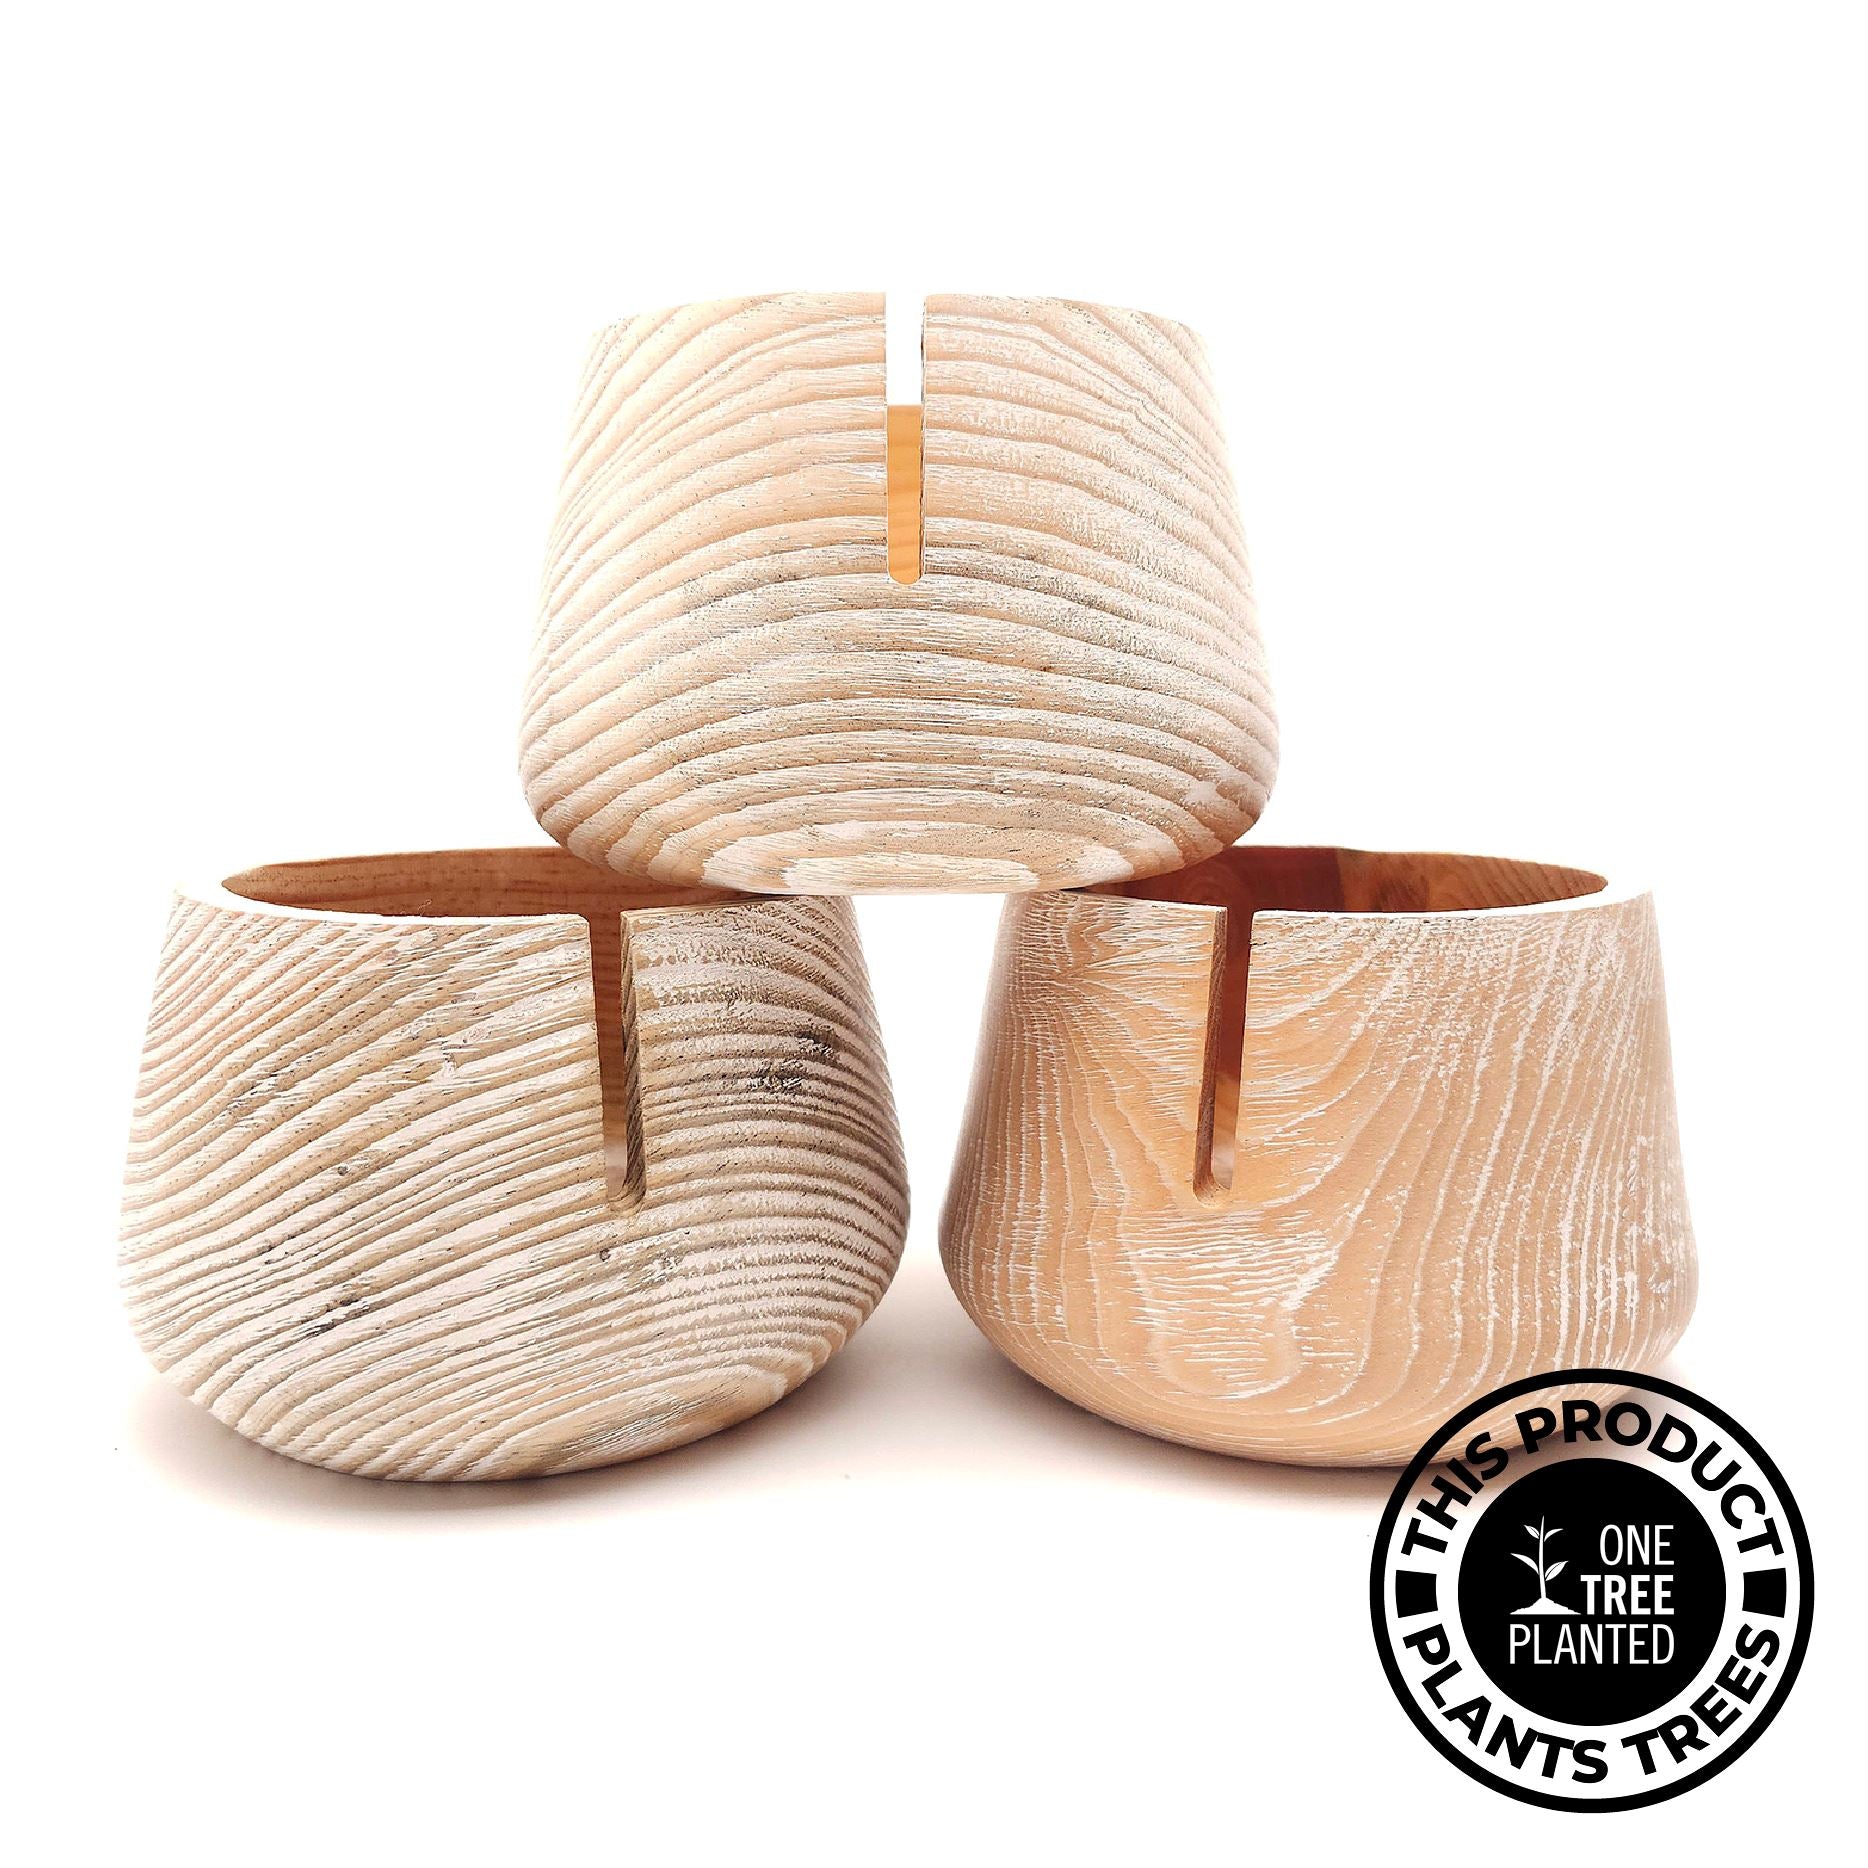 Handmade Minimalist Pine Wood Yarn Bowls Yarn Bowl FurlsCrochet 